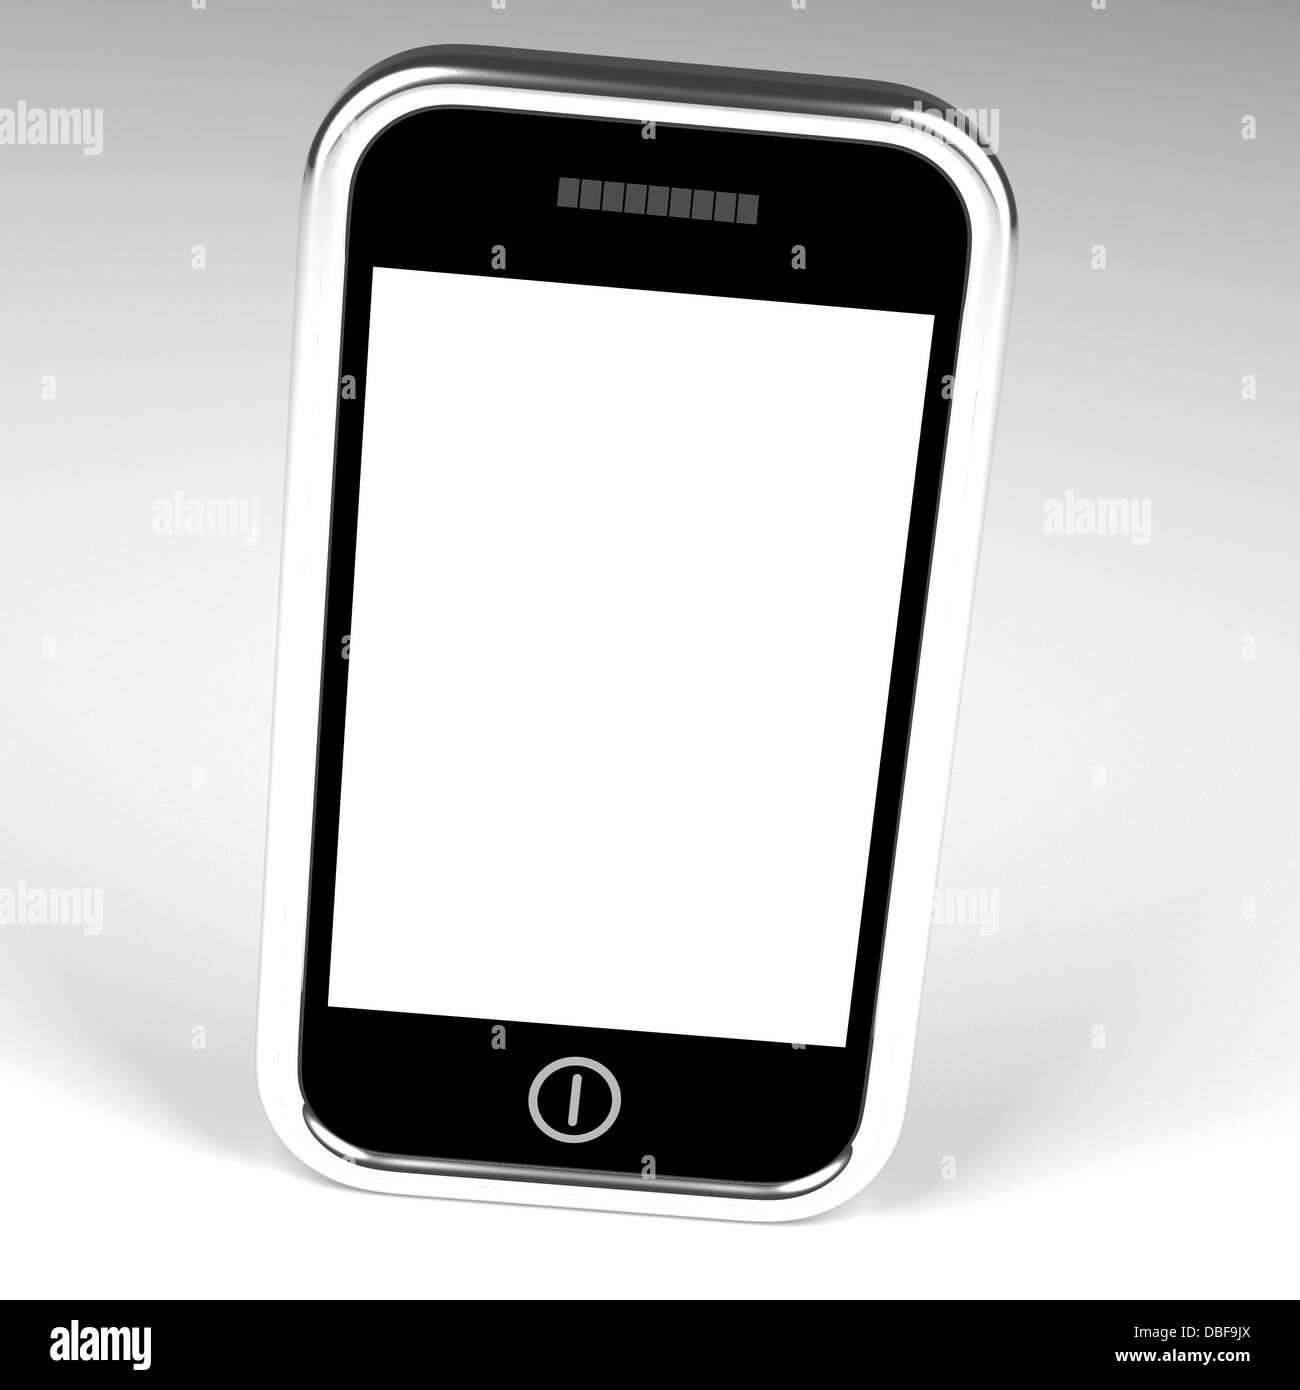 Smartphone-Bildschirm mit weißen Exemplar und weißen Zeitmessung Stockfoto